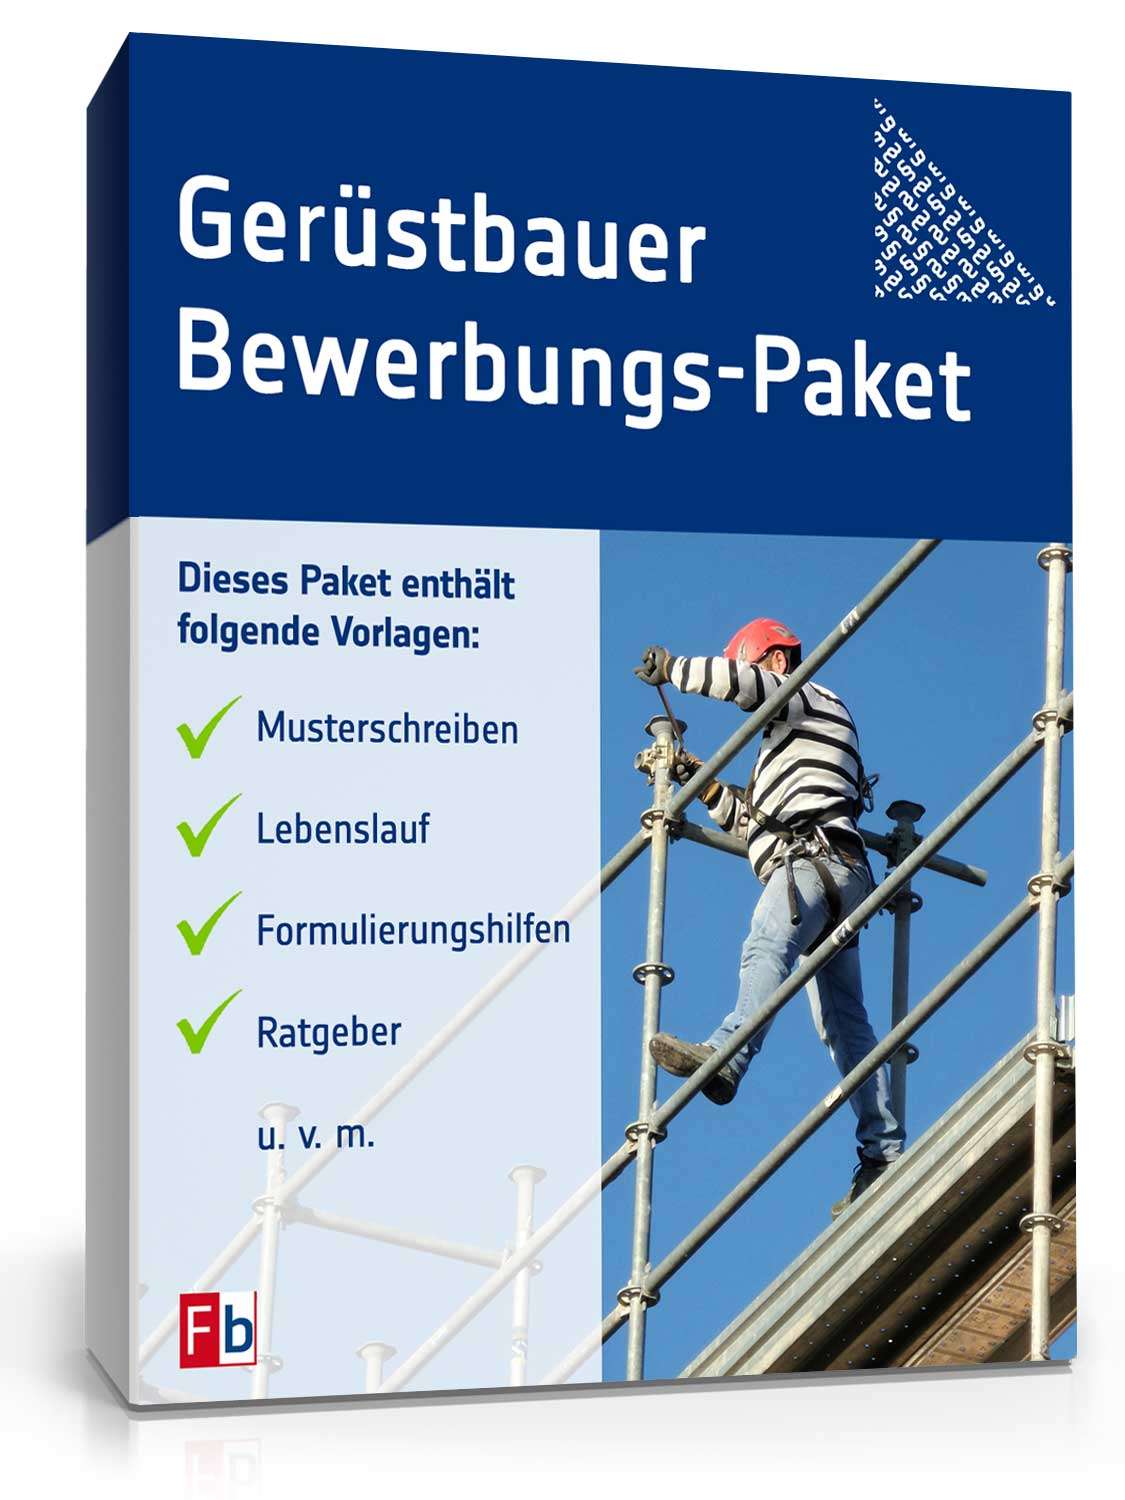 Hauptbild des Produkts: Bewerbungs-Paket Gerüstbauer 